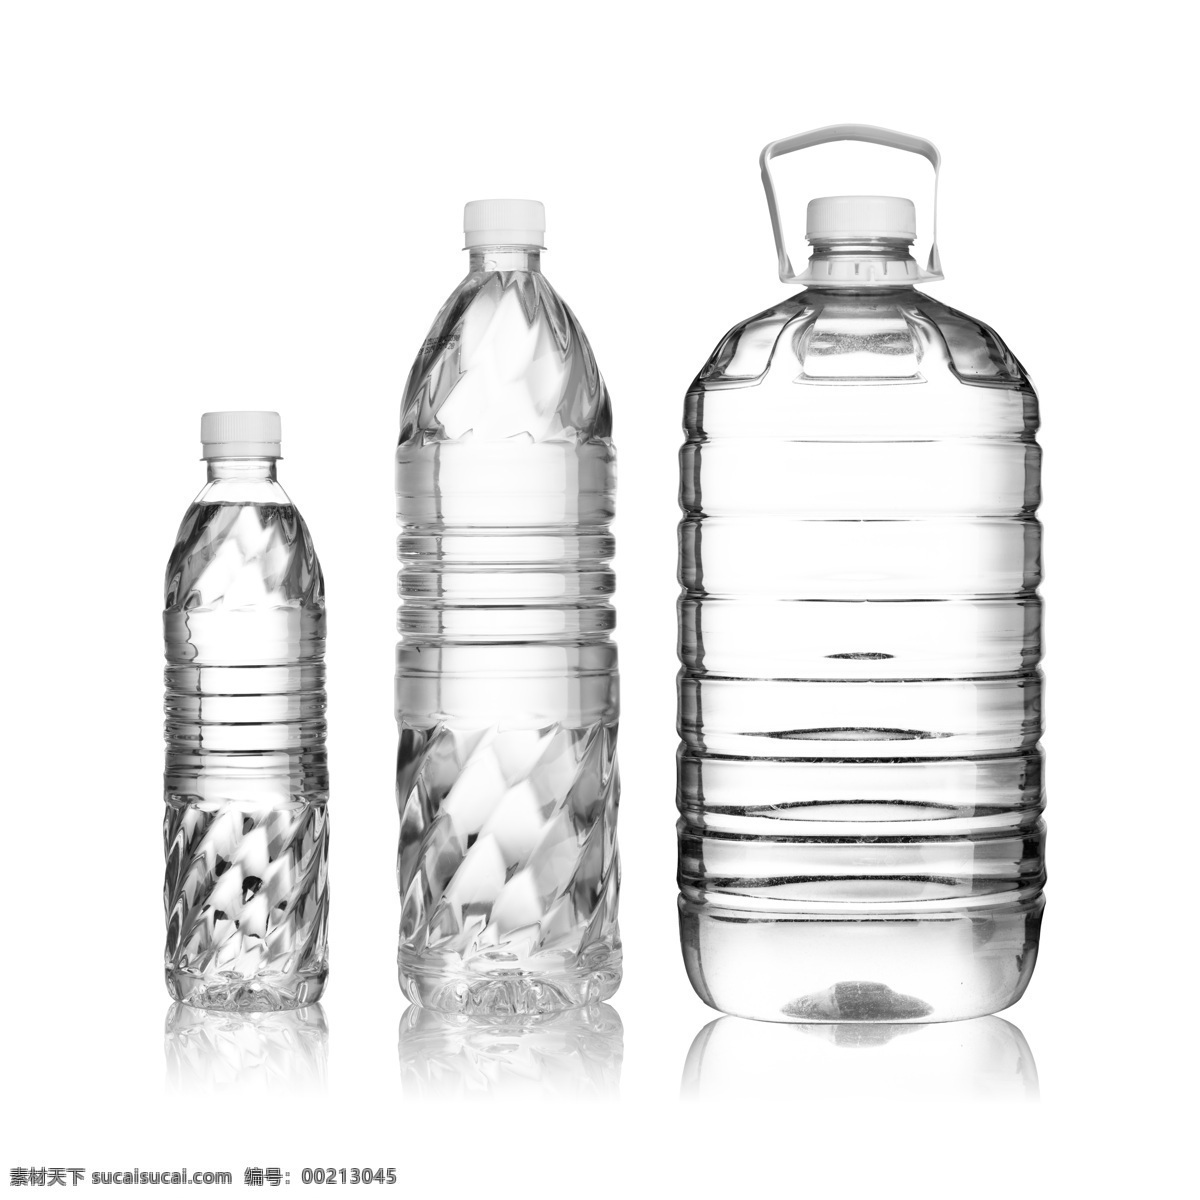 白色 塑料 矿泉水瓶 透明 矿泉水 瓶子 冰水烈火 生活百科